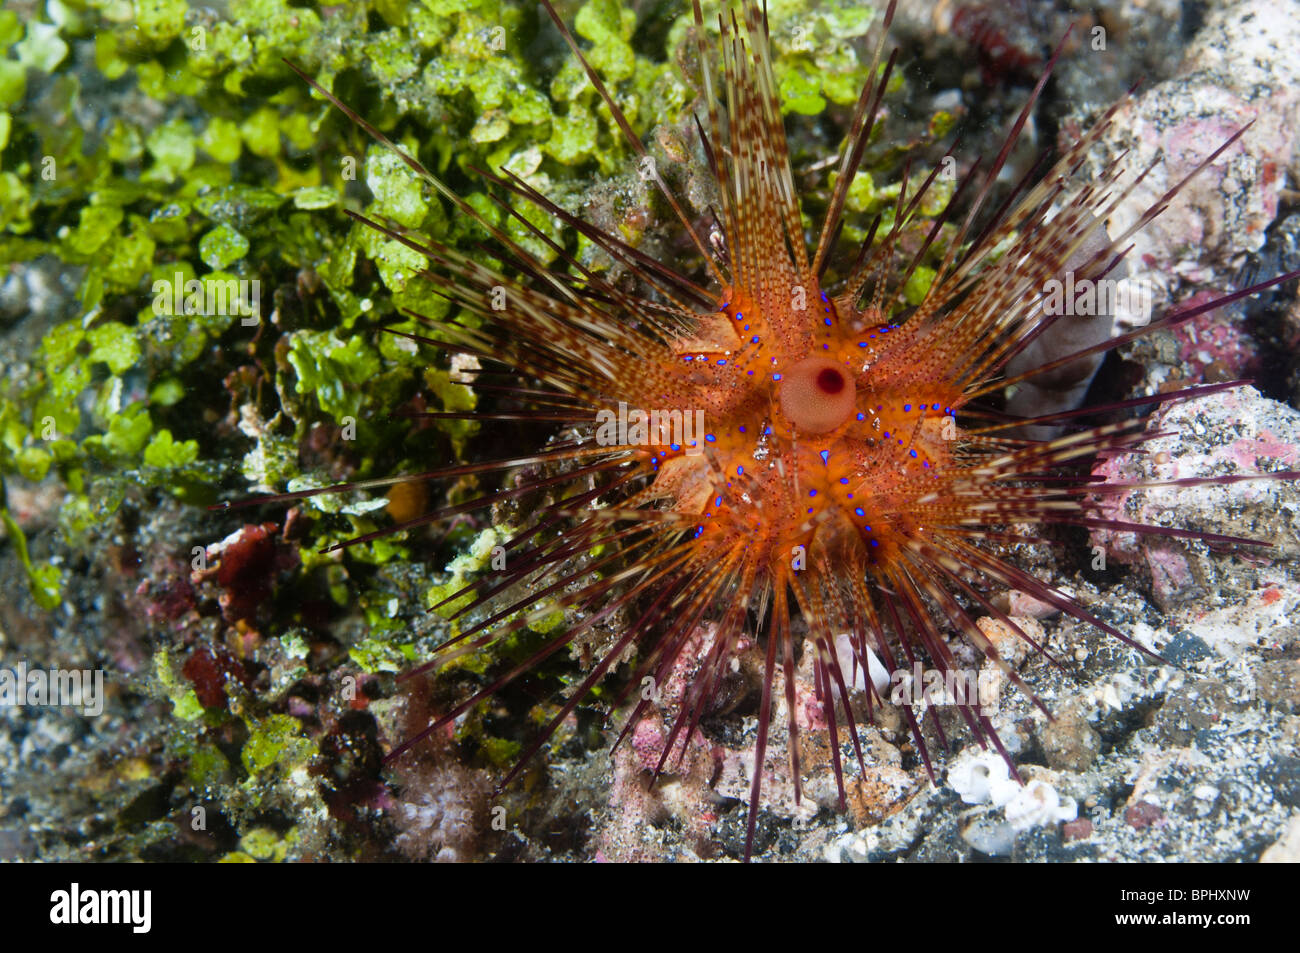 Longspine sea urchin, Lembeh Strait, Sulawesi, Indonesia. Stock Photo